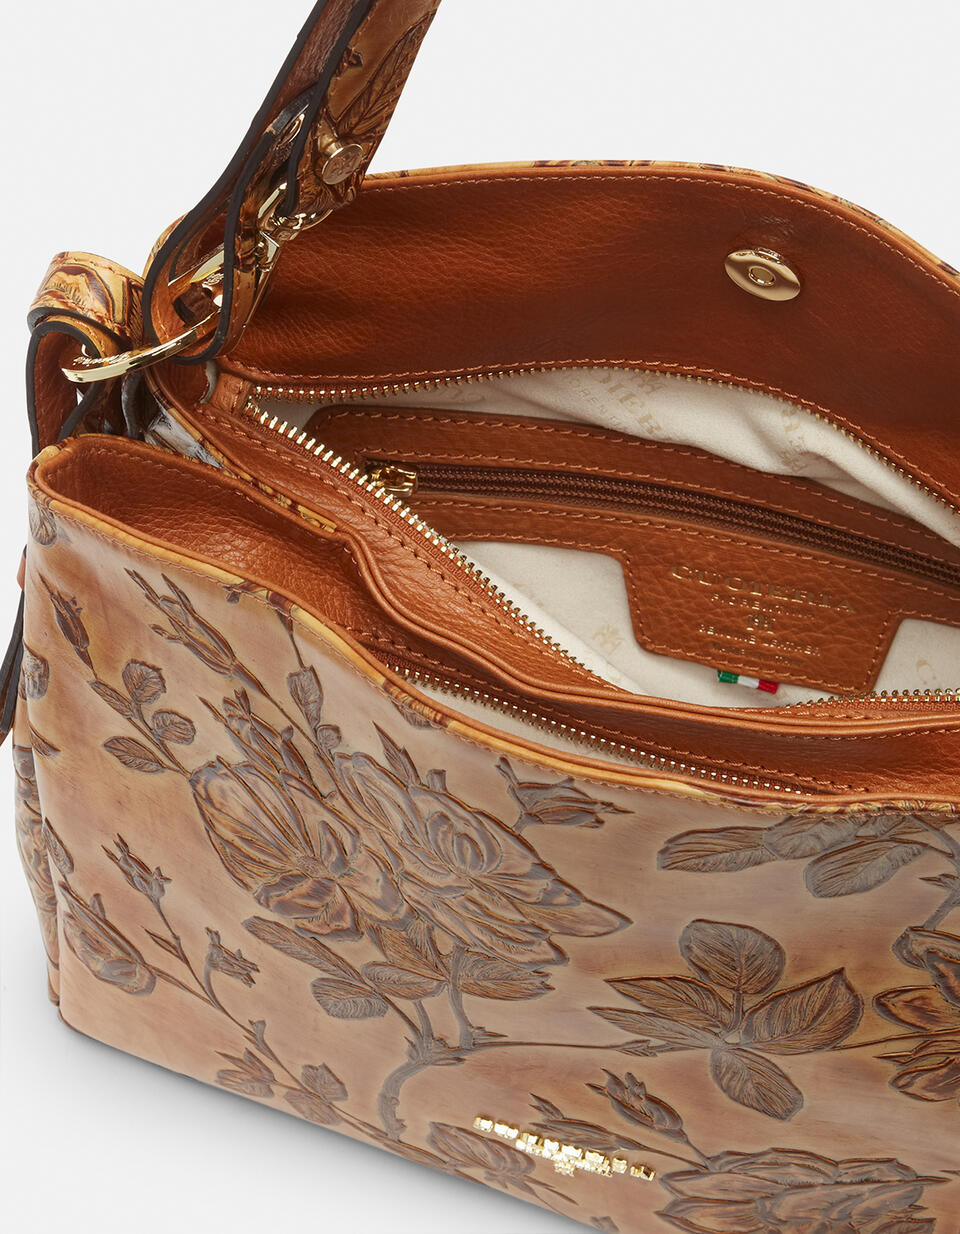 Medium Mimì casual shoulder bag - Shoulder Bags - WOMEN'S BAGS | bags Mimì BEIGE - Shoulder Bags - WOMEN'S BAGS | bagsCuoieria Fiorentina